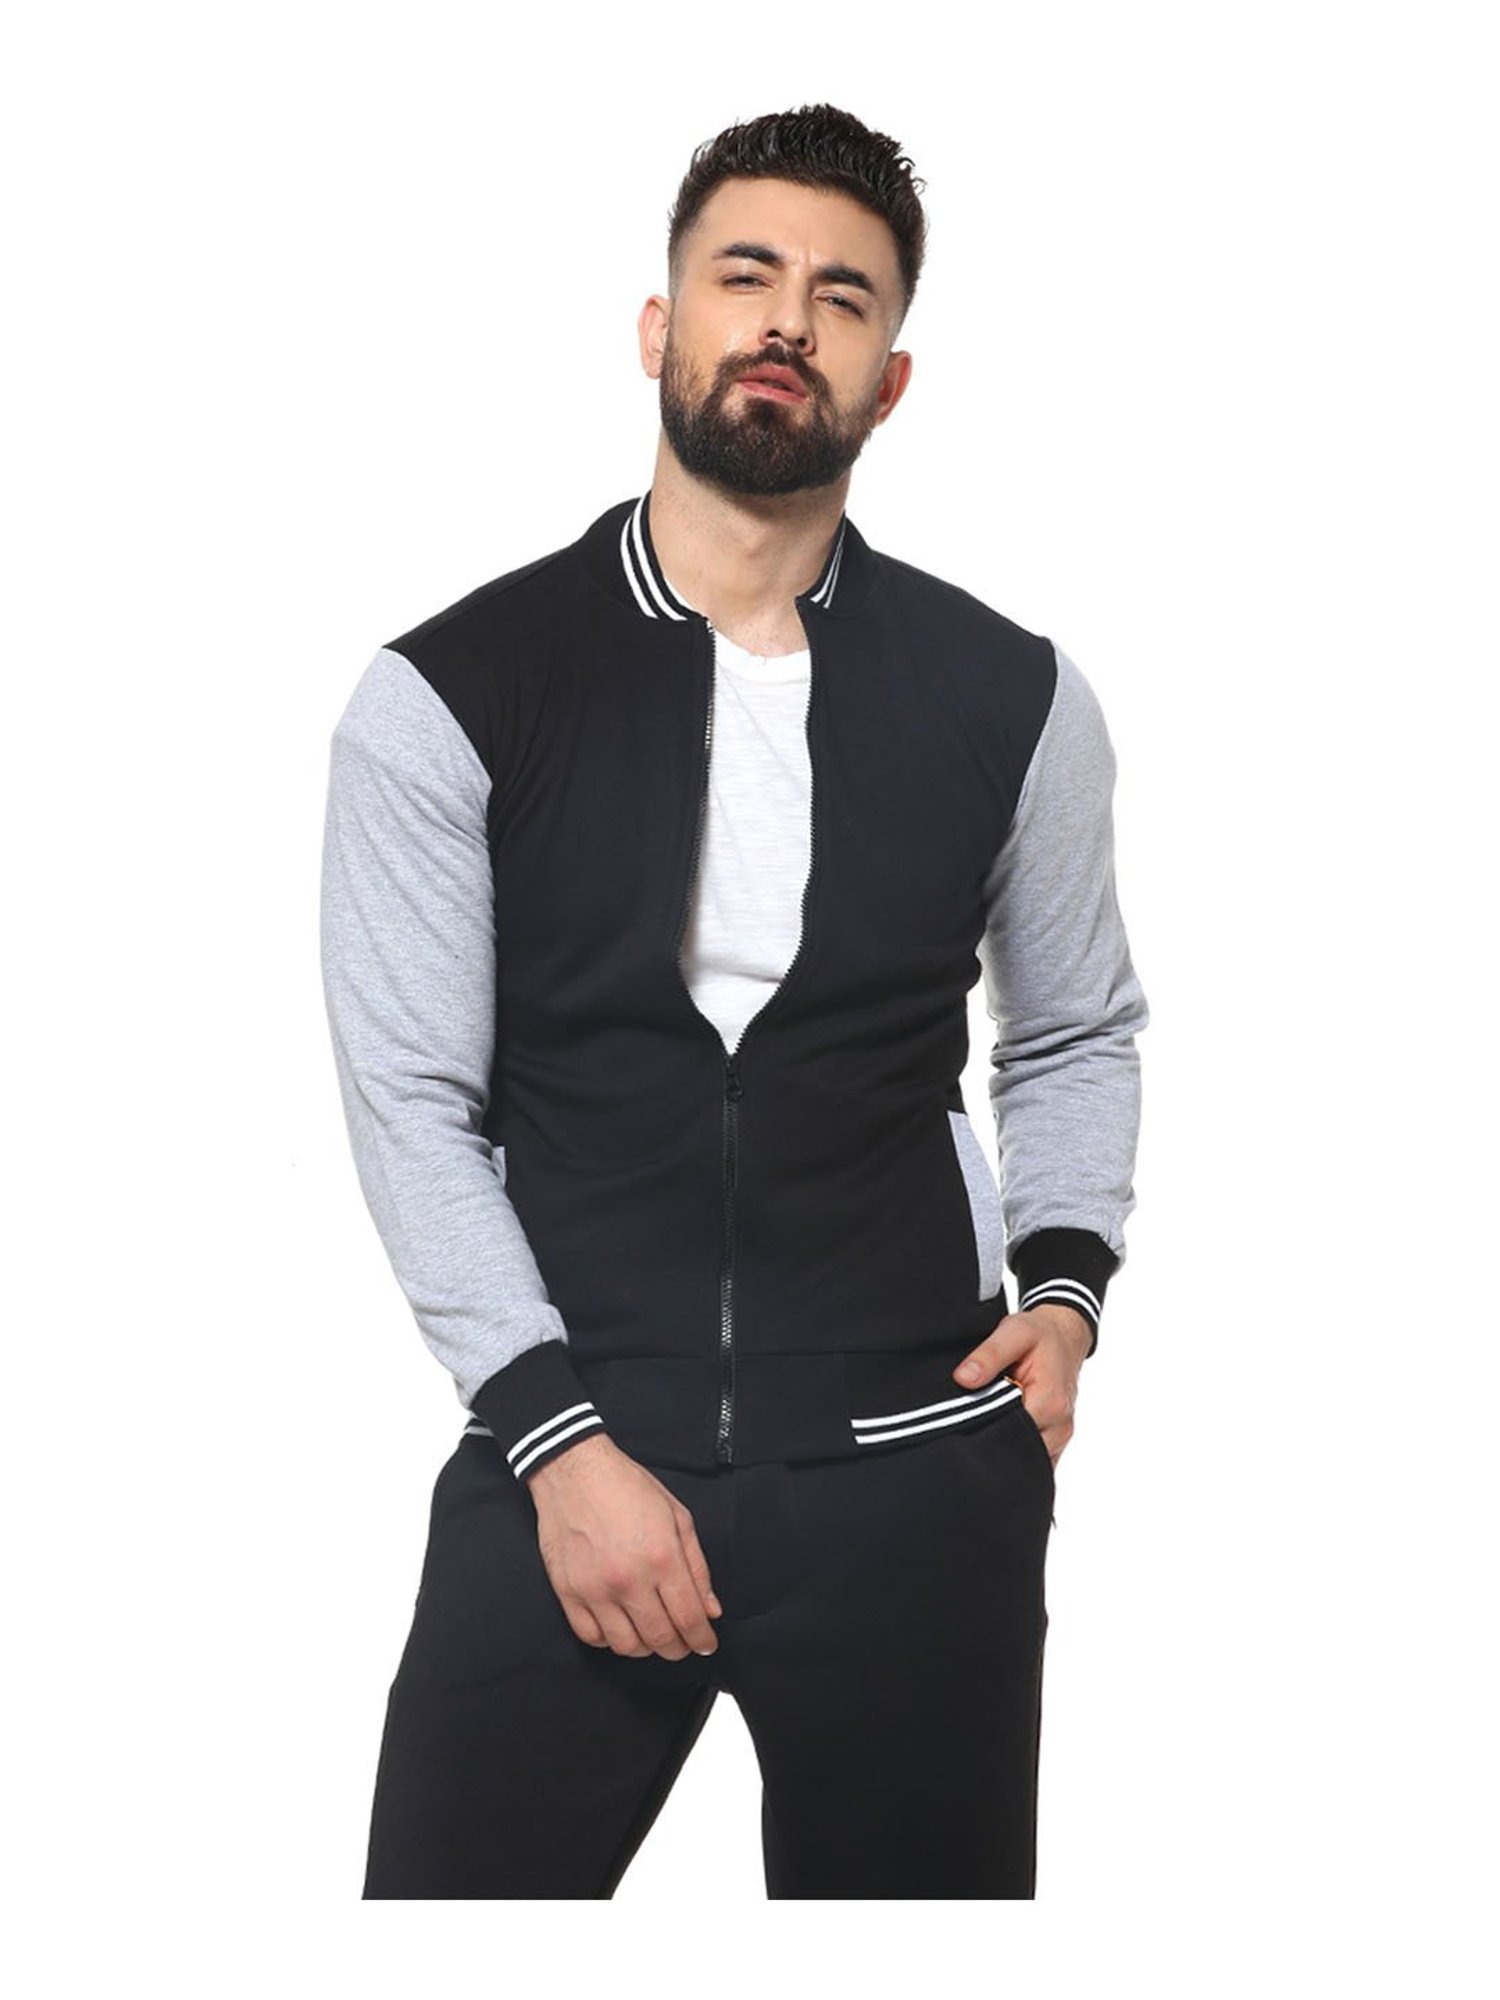 Buy Campus Sutra Men Solid Grey Color Block Bomber jacket at Amazon.in